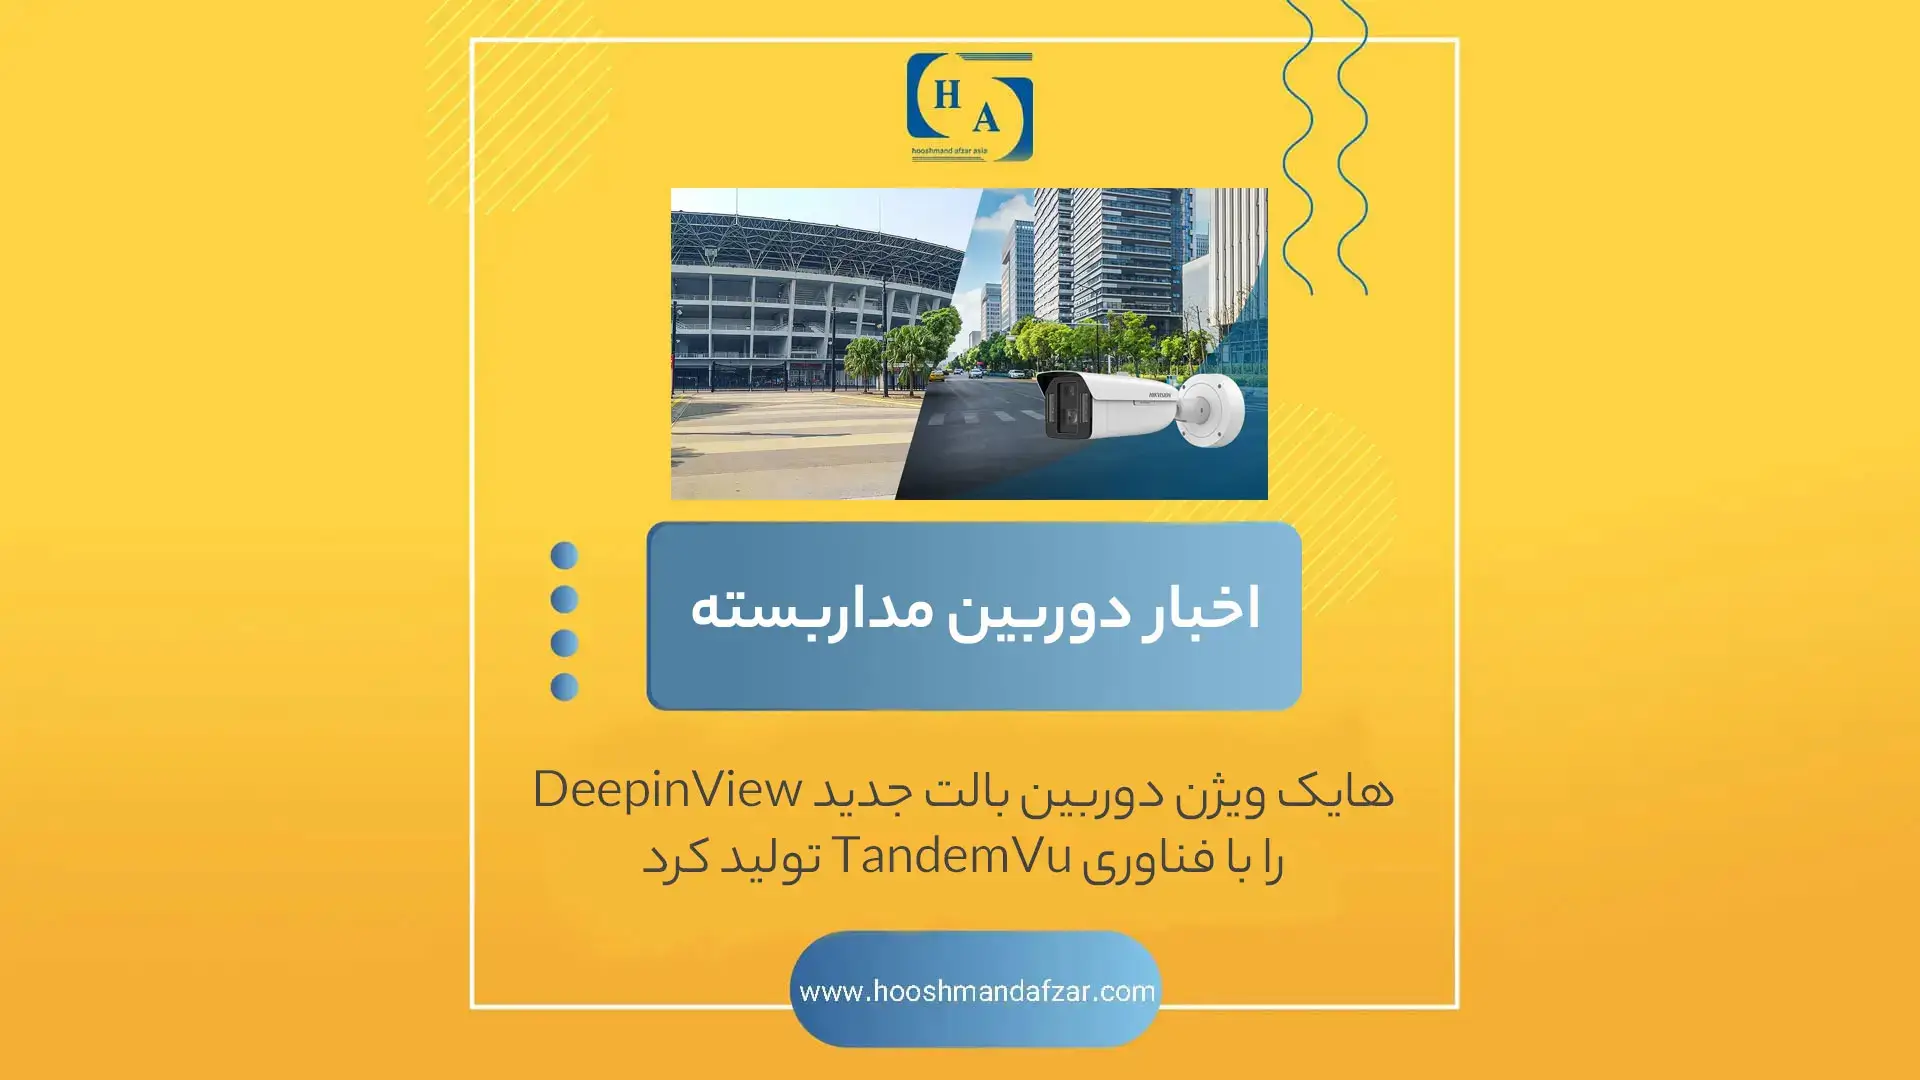 هایک ویژن دوربین بالت جدید DeepinView را با فناوری TandemVu تولید کرد